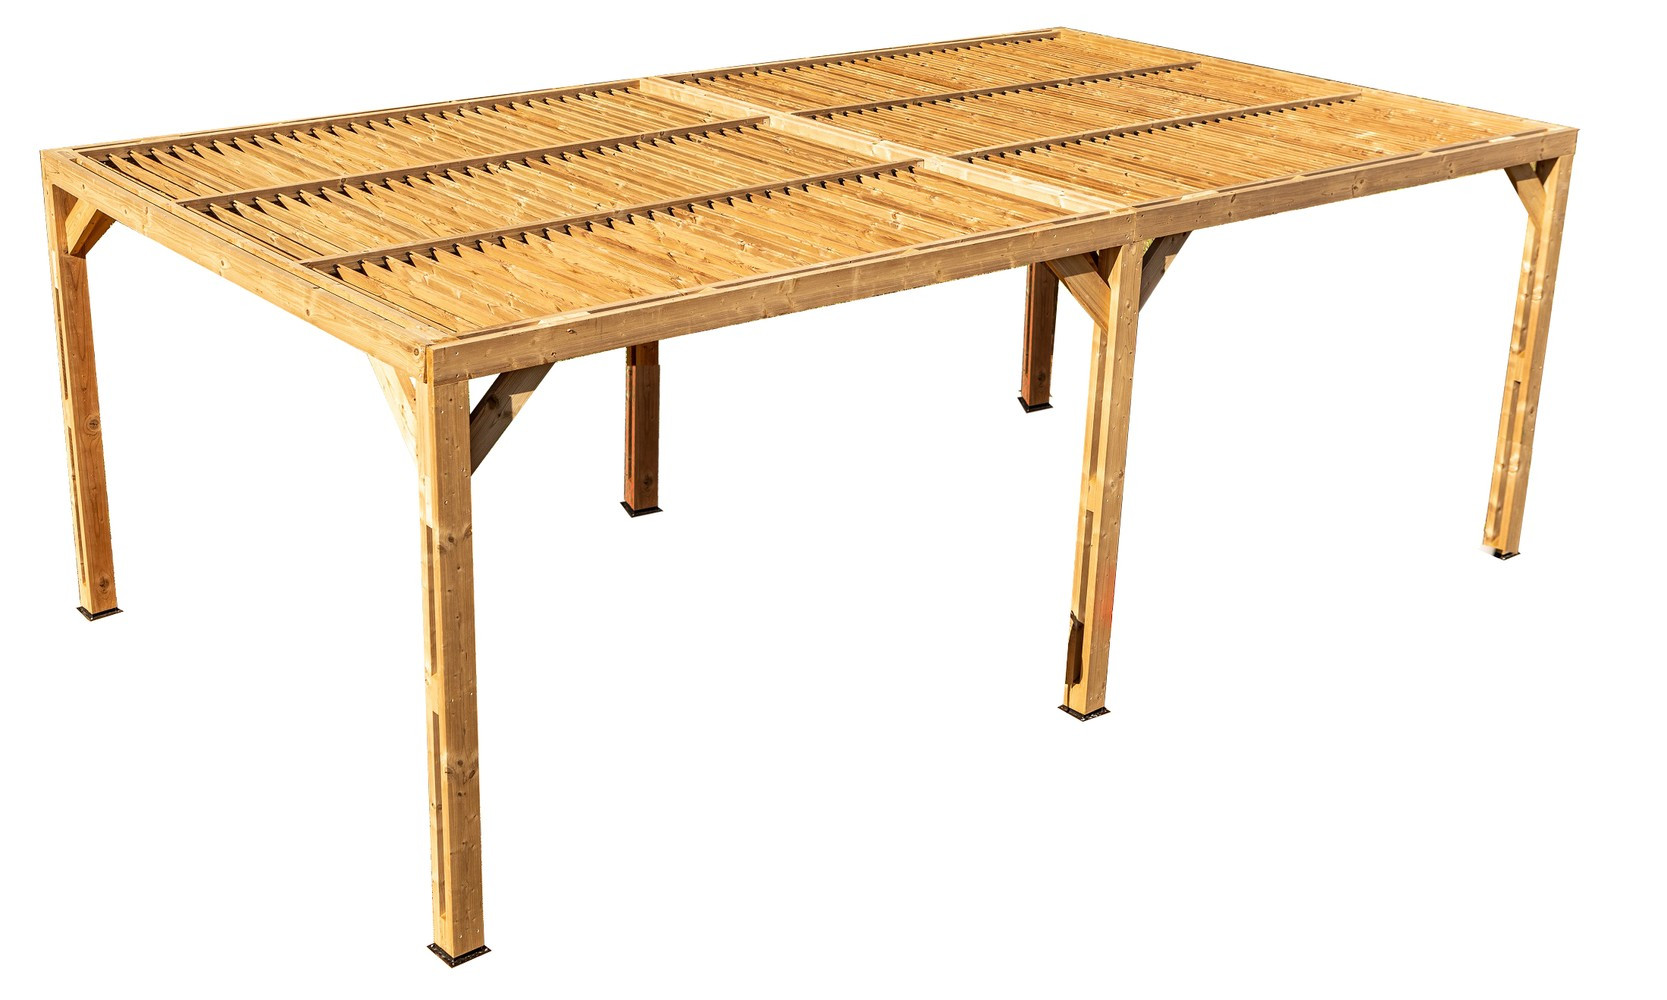 Pergola grandes dimensions en bois massif traité - toit en ventelles mobiles - 341 x 614 cm